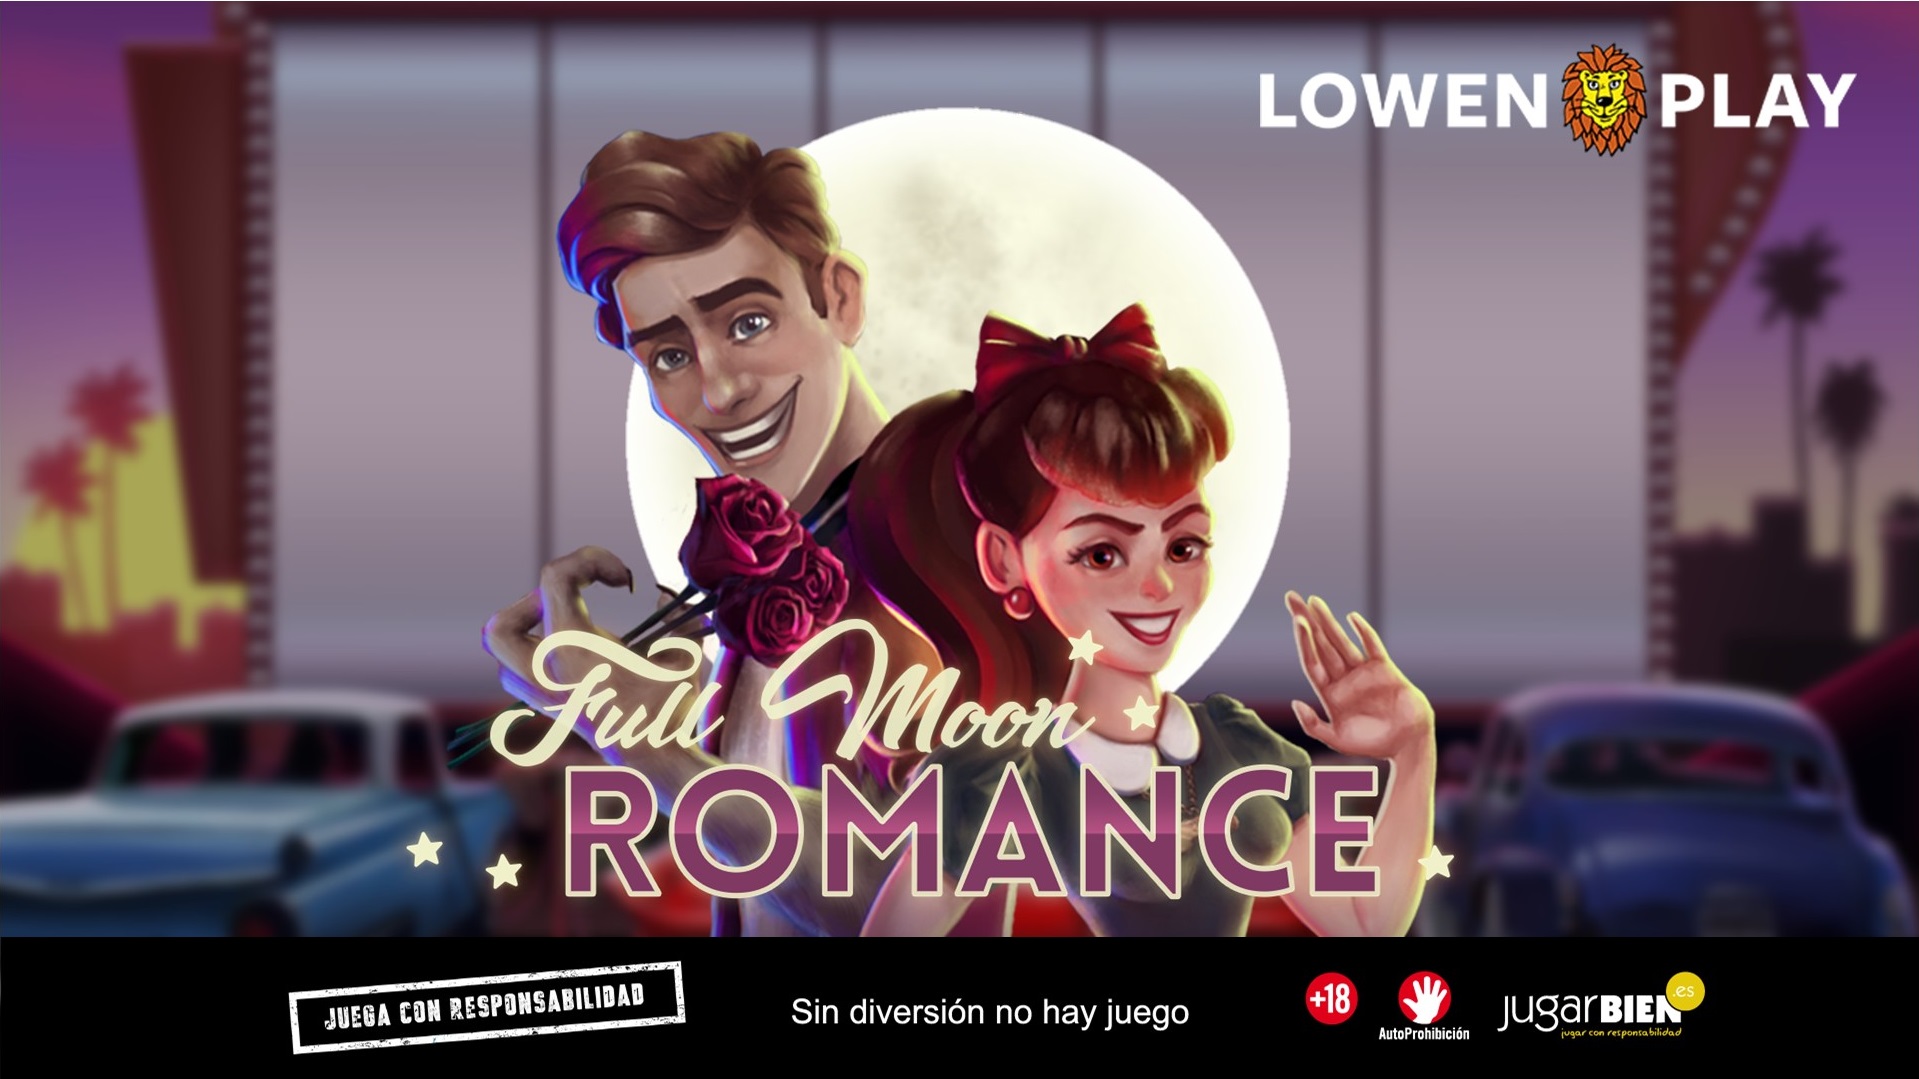 22 full moon romance tk legal Disfruta del Halloween más terrorífico y divertido en el casino